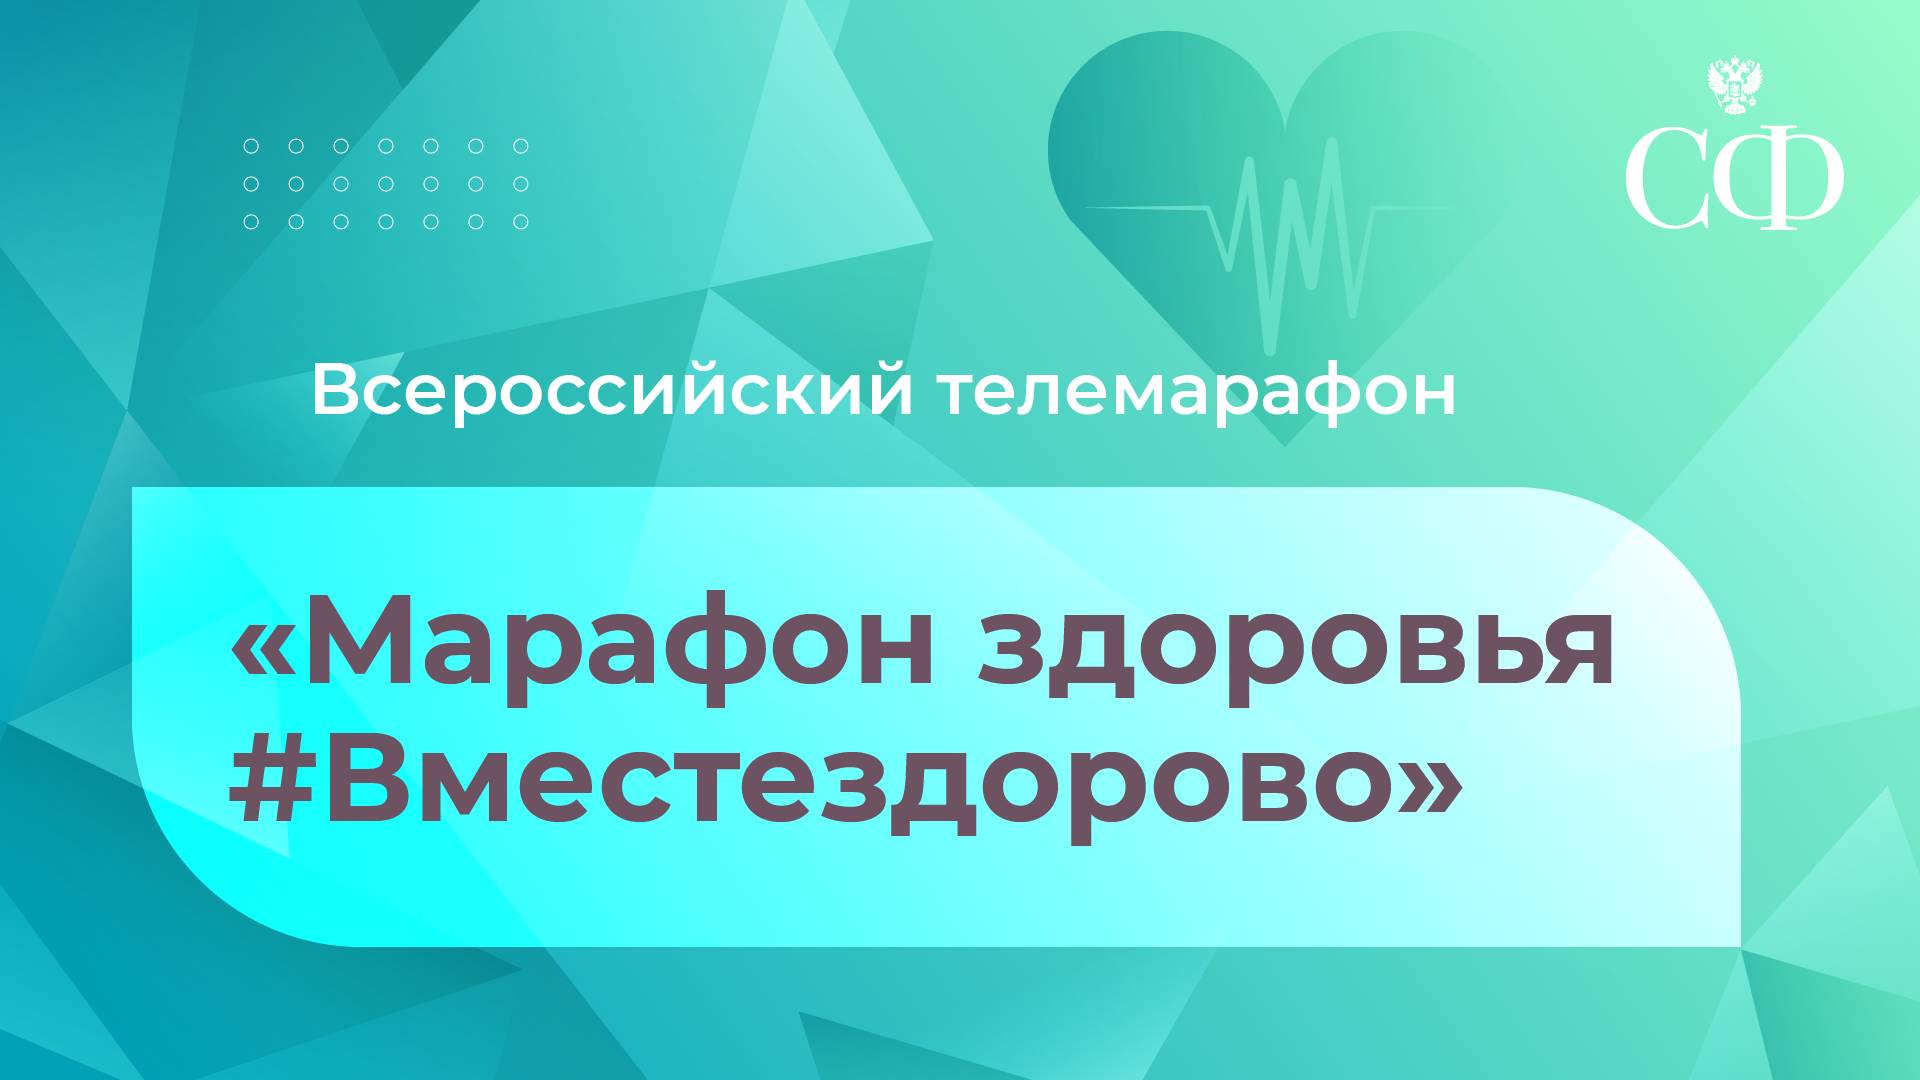 Всероссийский телемарафон «Марафон здоровья #Вместездорово»